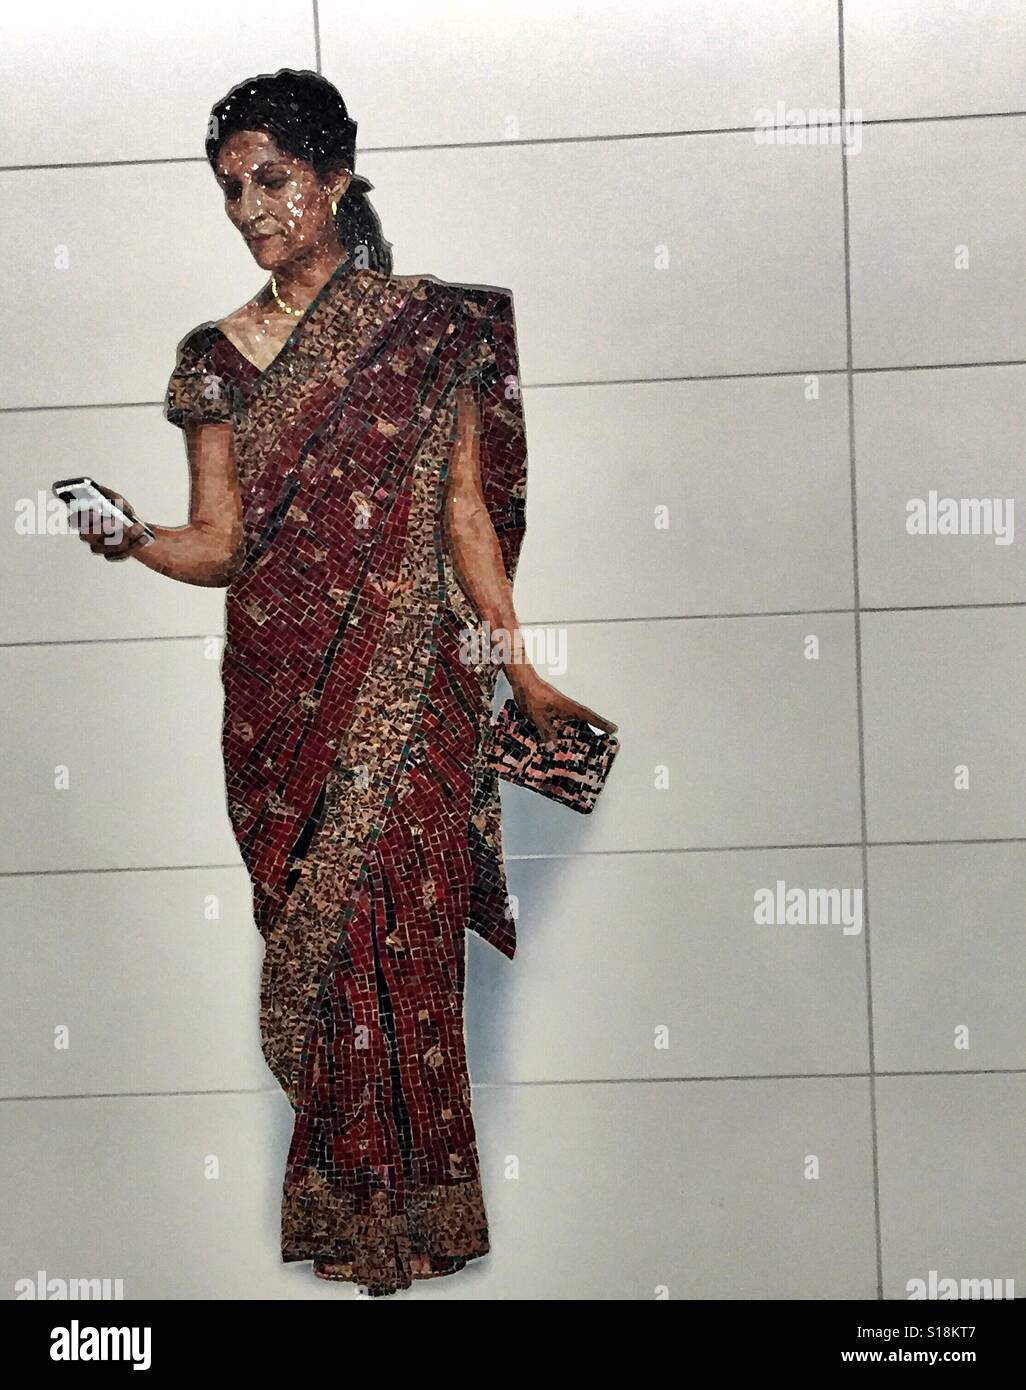 L'art de la mosaïque à nouveau à l'Est de la station de métro 72nd Street, représentant tous les jours New Yorkais. Une femme portant un sari, regardant son téléphone cellulaire. Banque D'Images